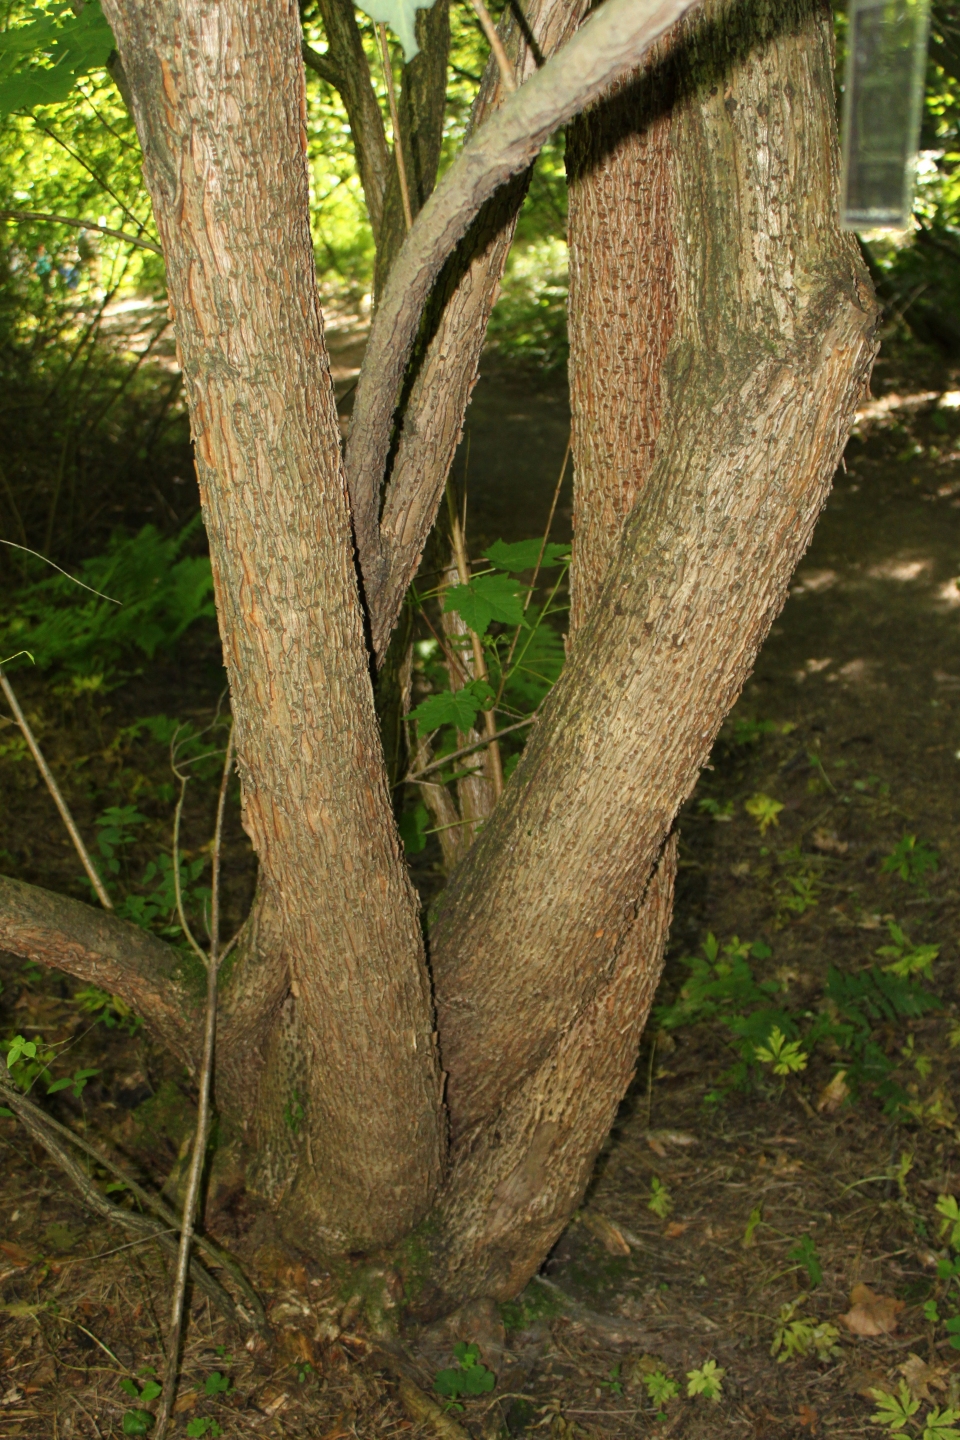 Acer caudatum